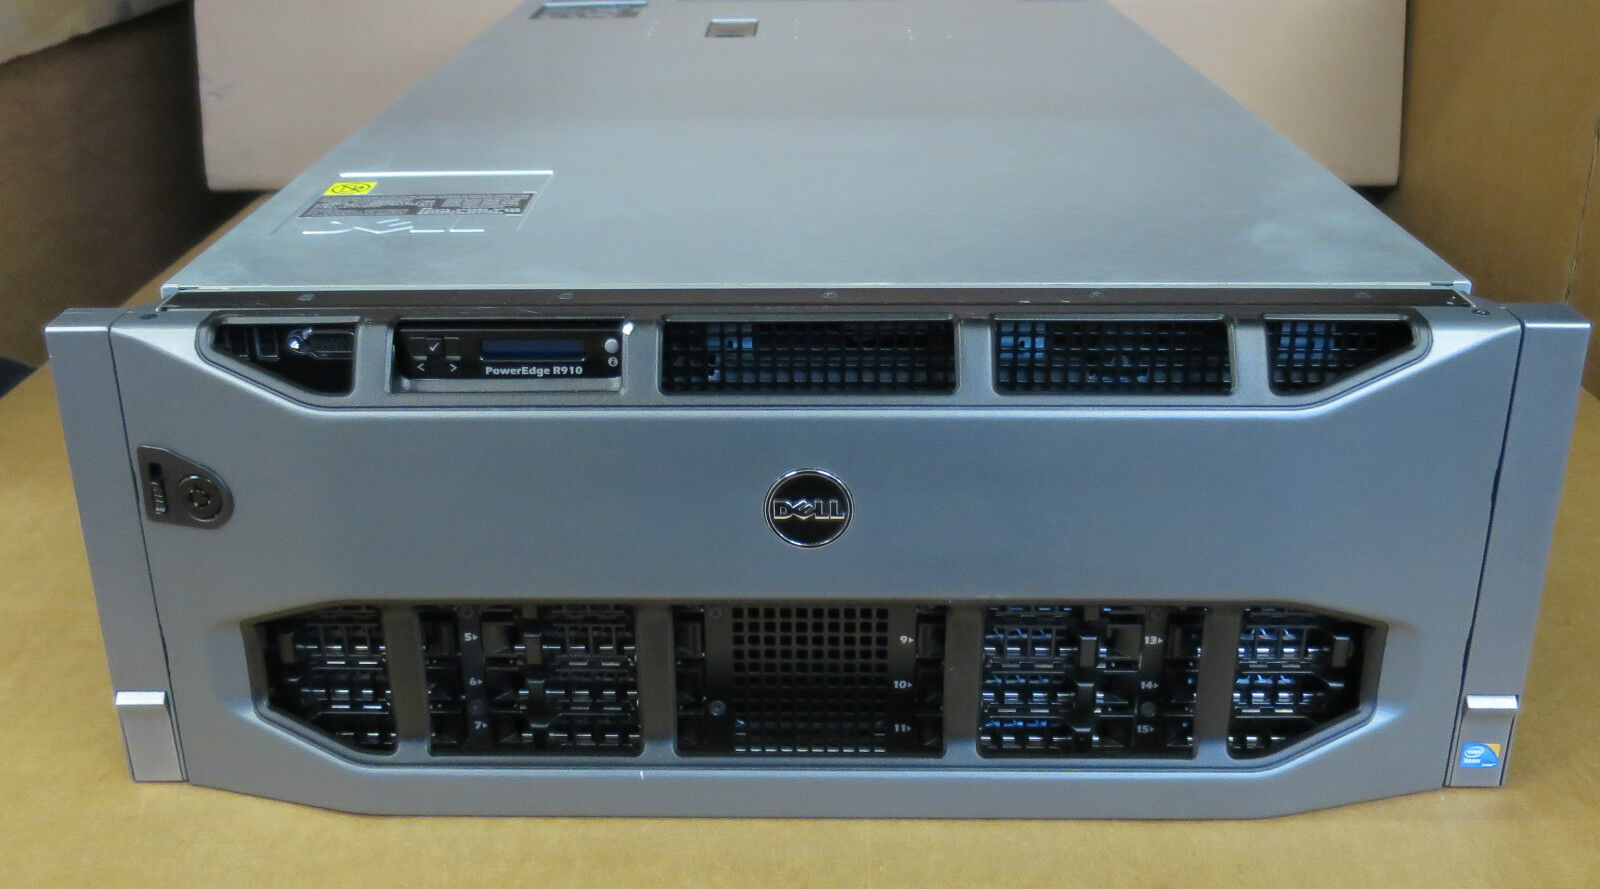 Dell PowerEdge R910 32-XEON Cores 4 x EIGHT-8C Procs 256GB RAM Rack Mount Server